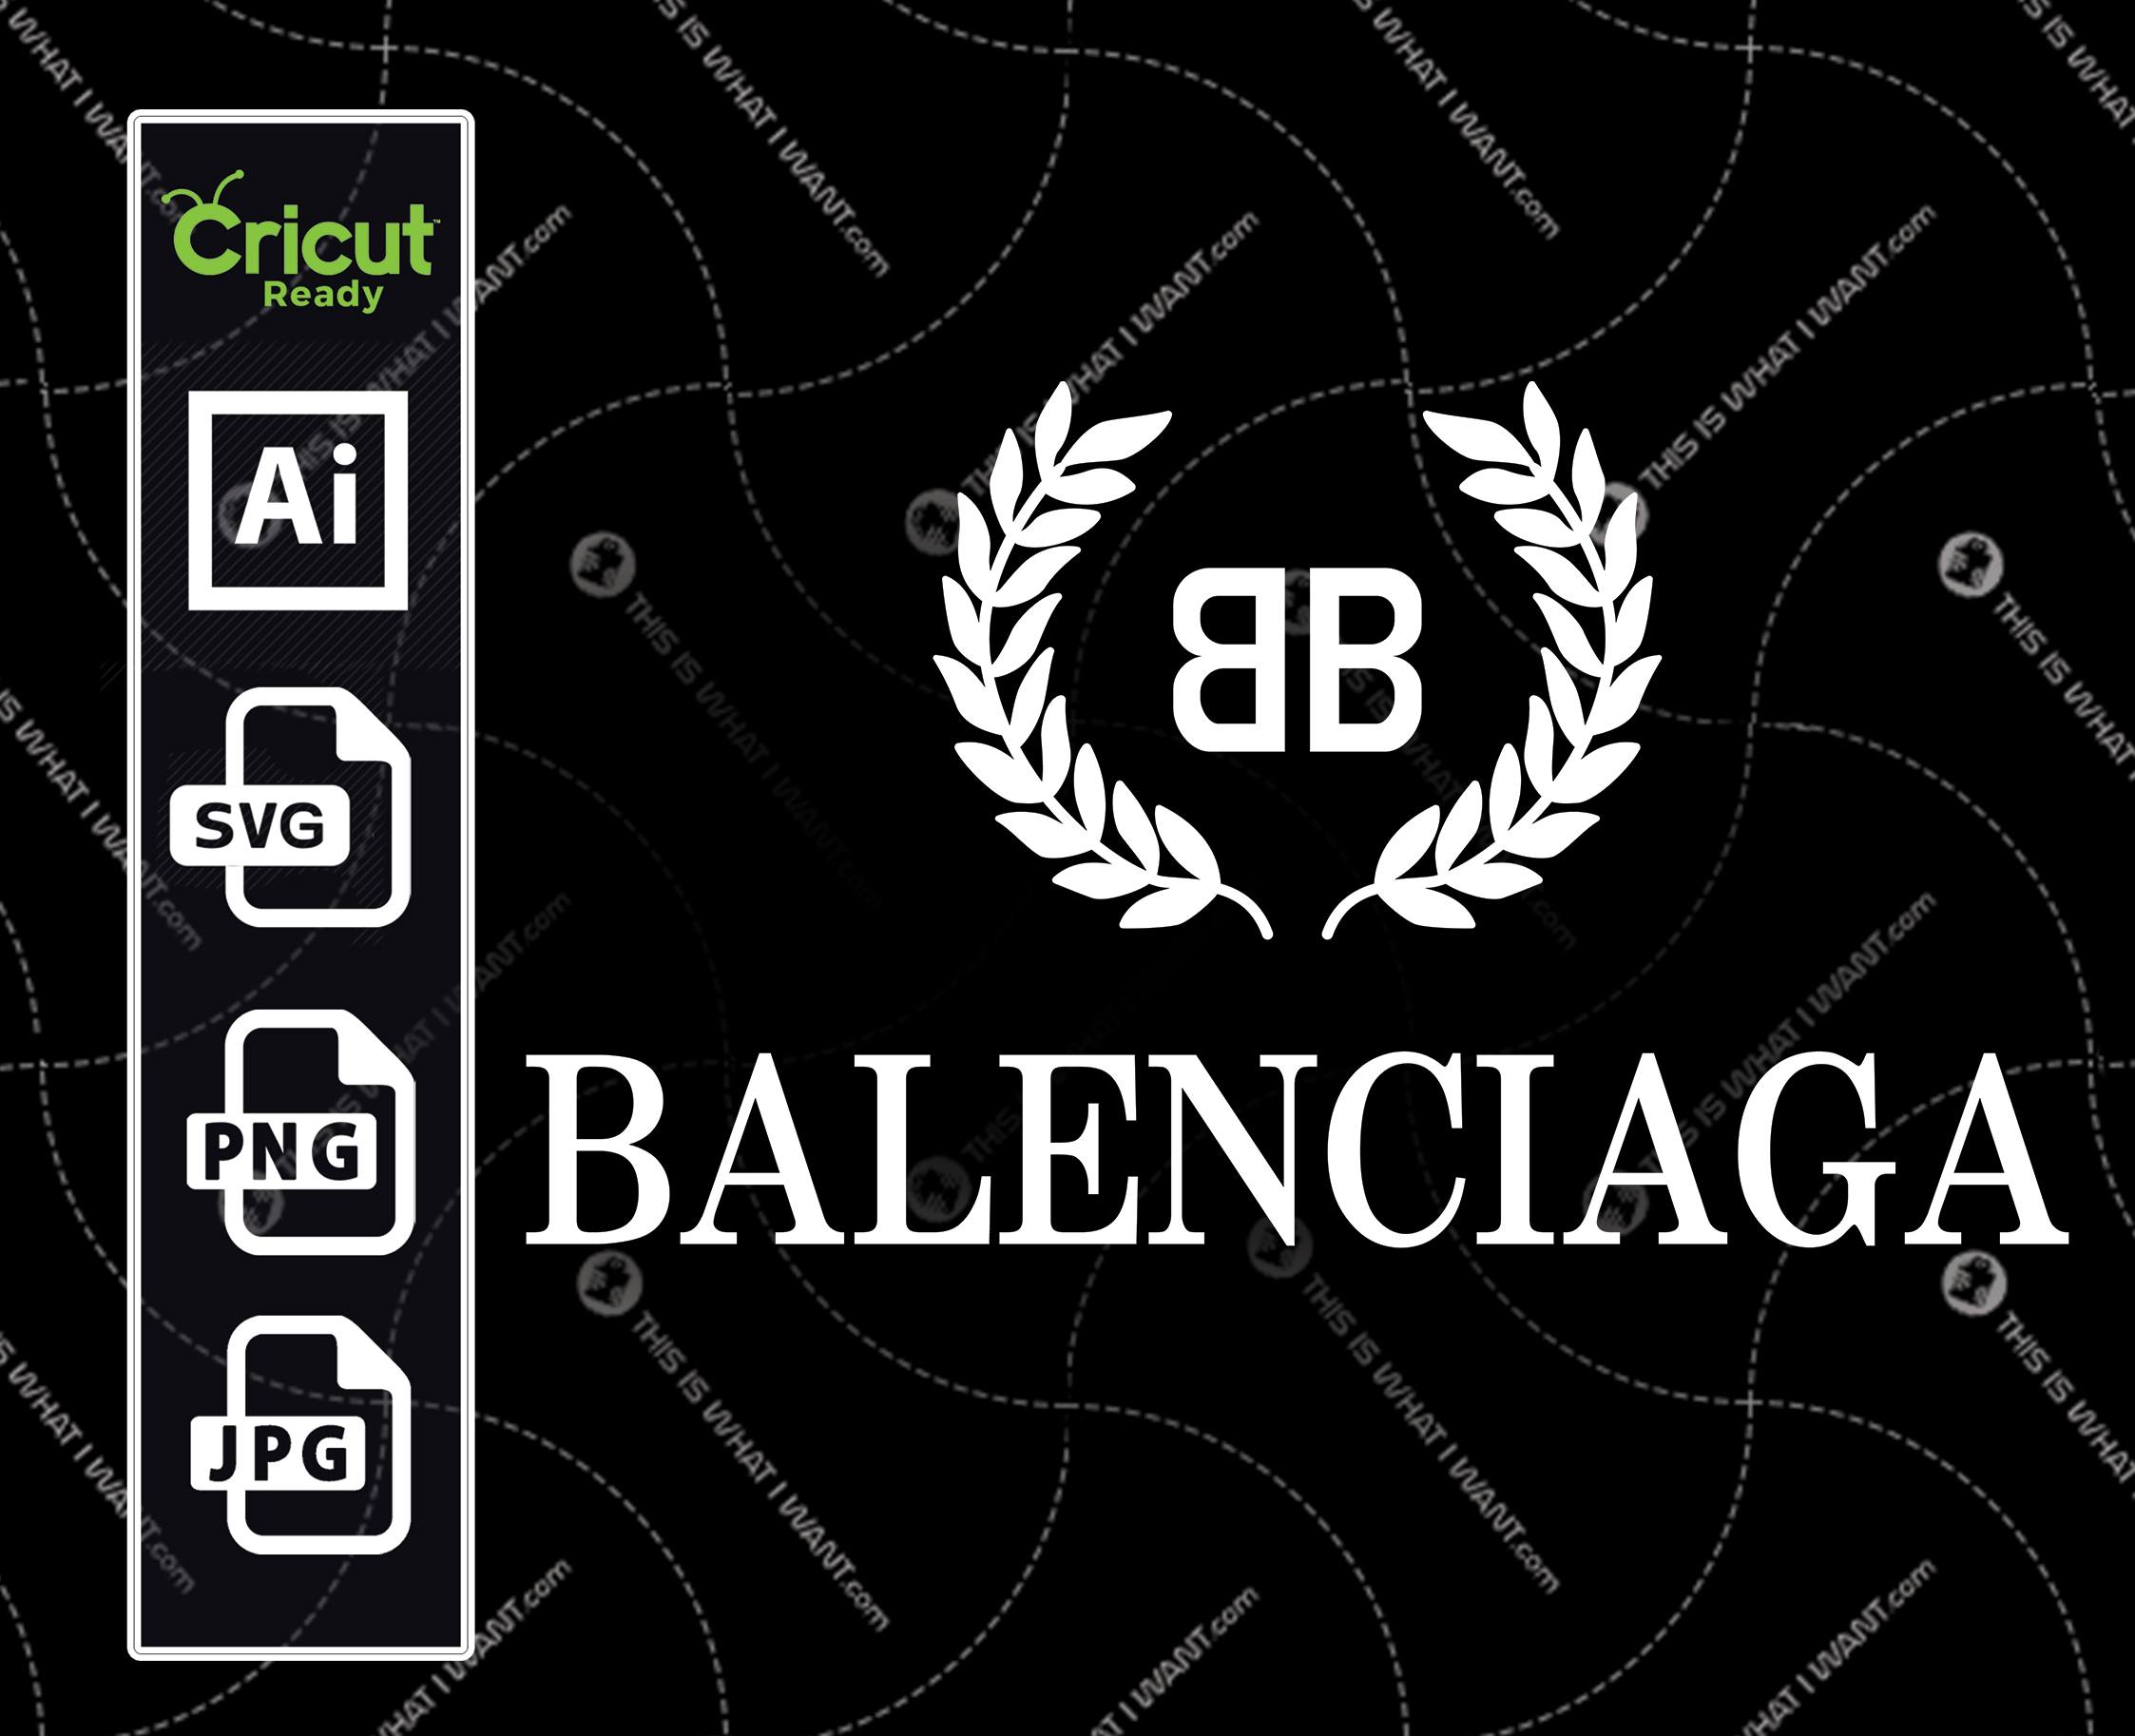 Balenciaga Inspired printable graphic art logo icon plus text - vector